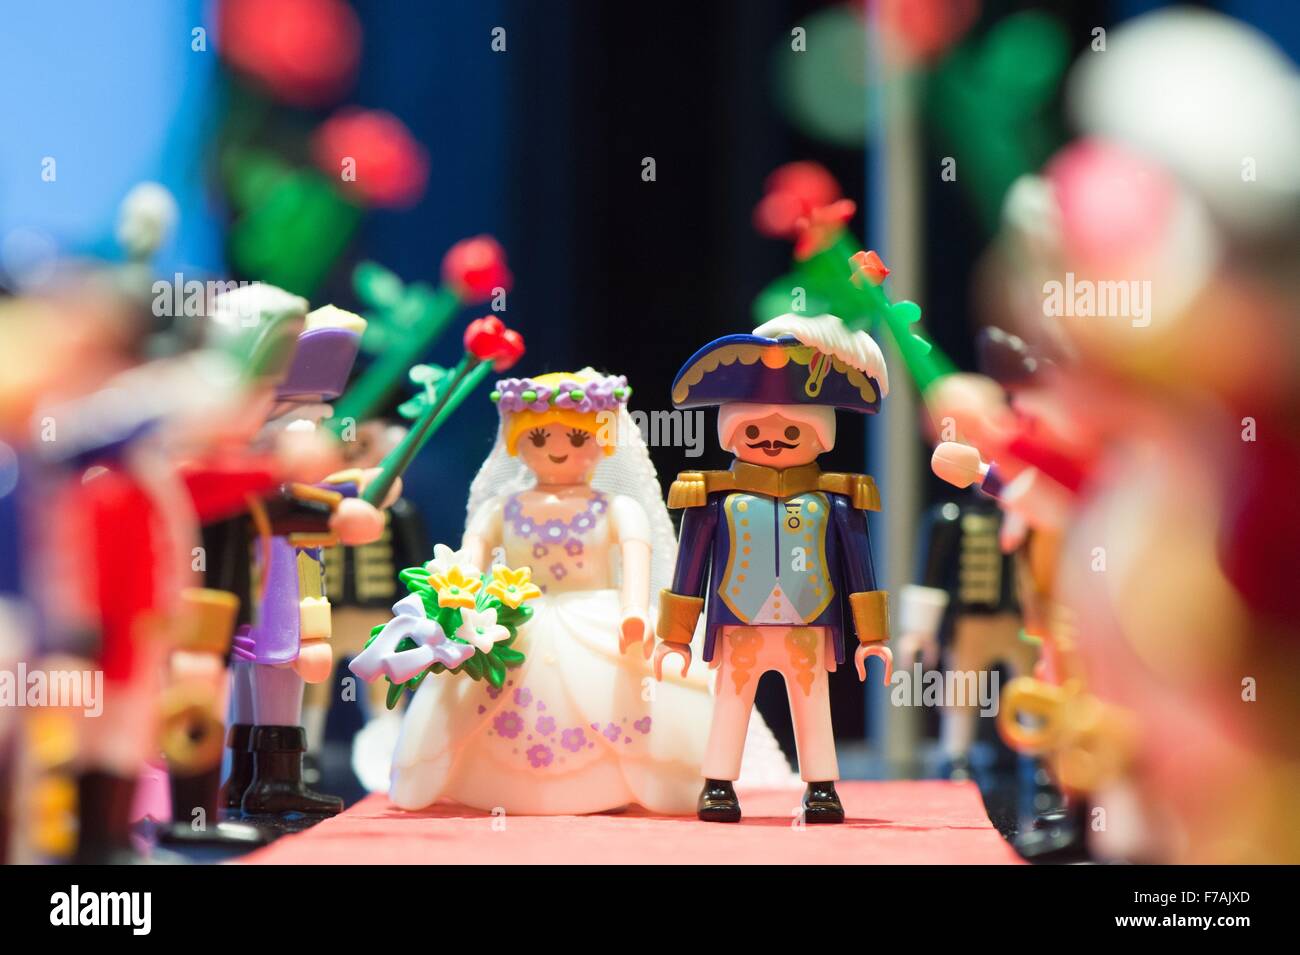 Playmobil Figures On Display In Stockfotos und -bilder Kaufen - Alamy